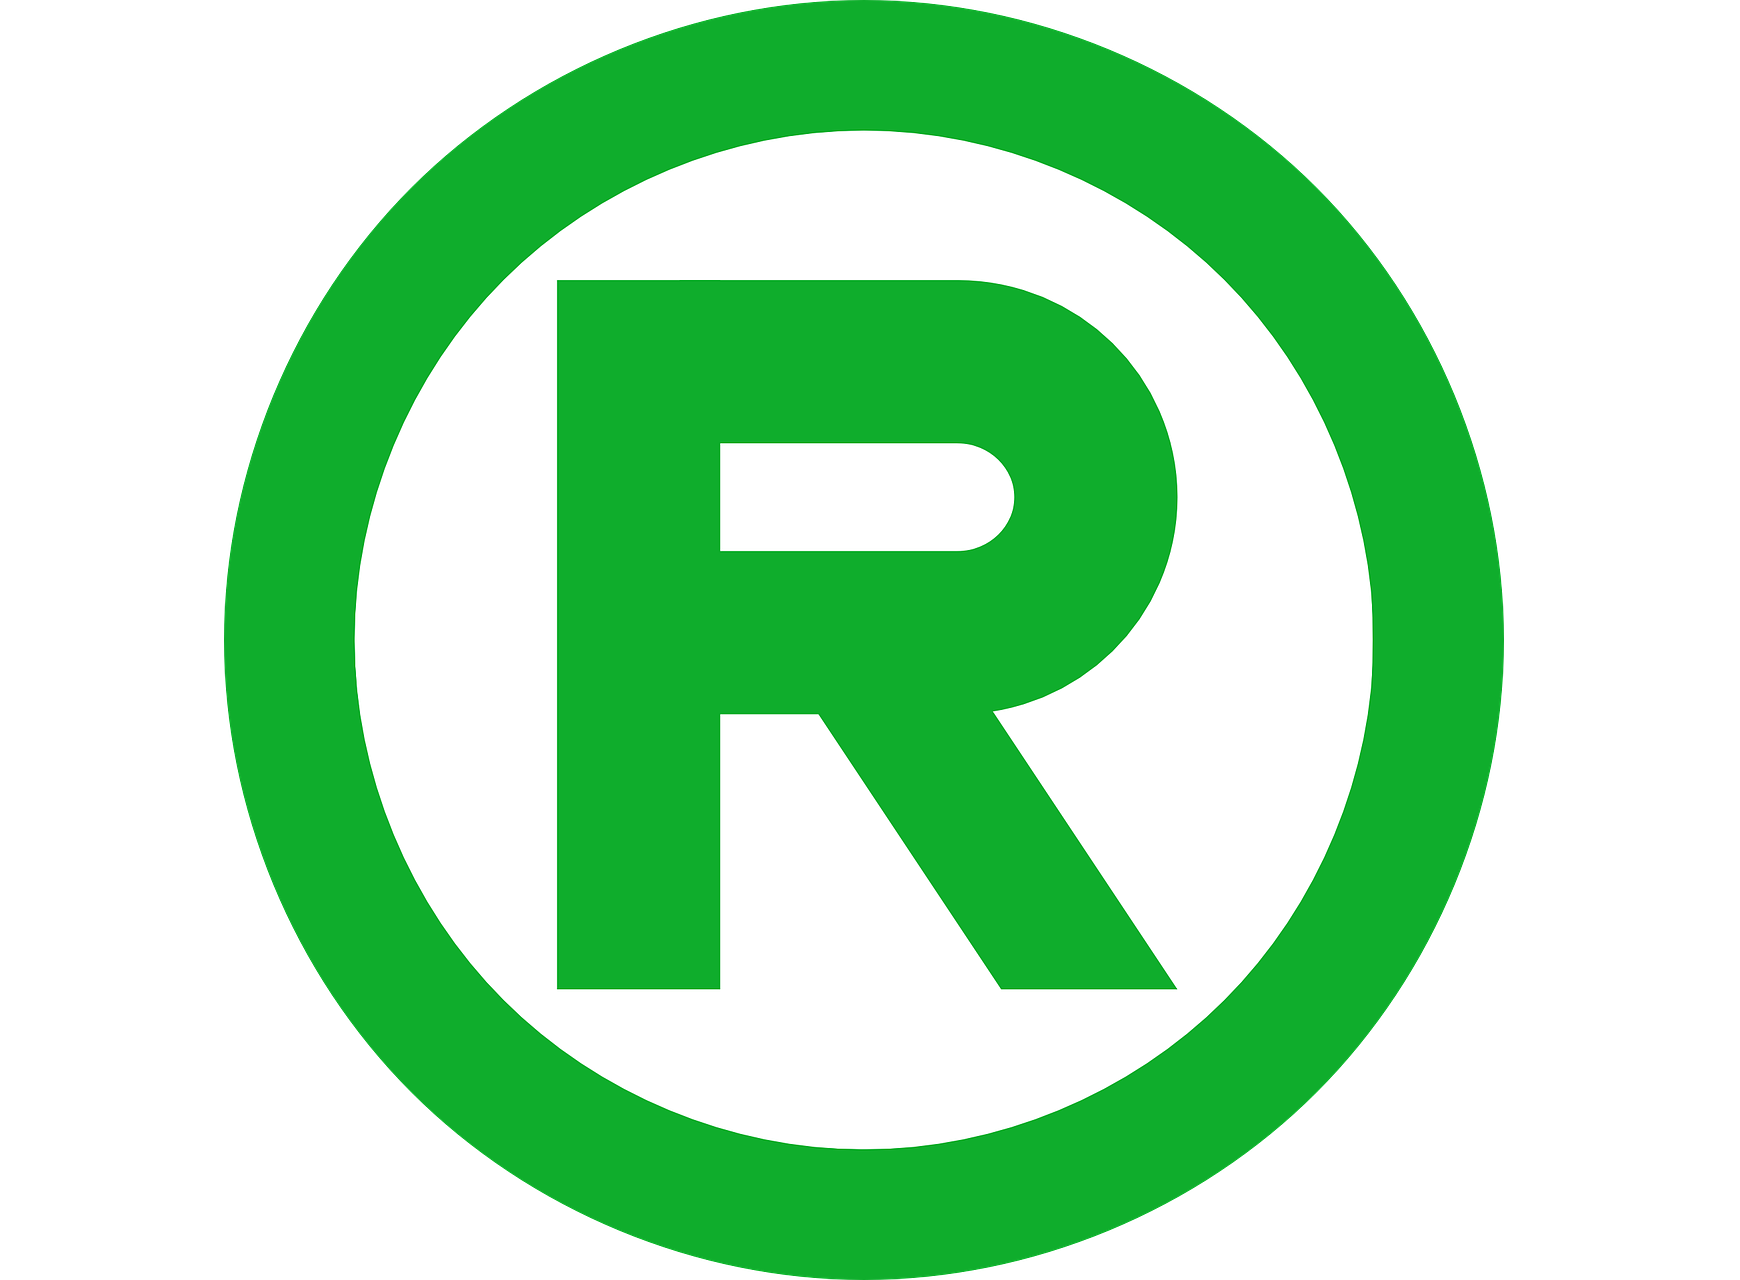 D en r. Значок r. Знак торговой марки. Товарный знак r. Буква r в круге.